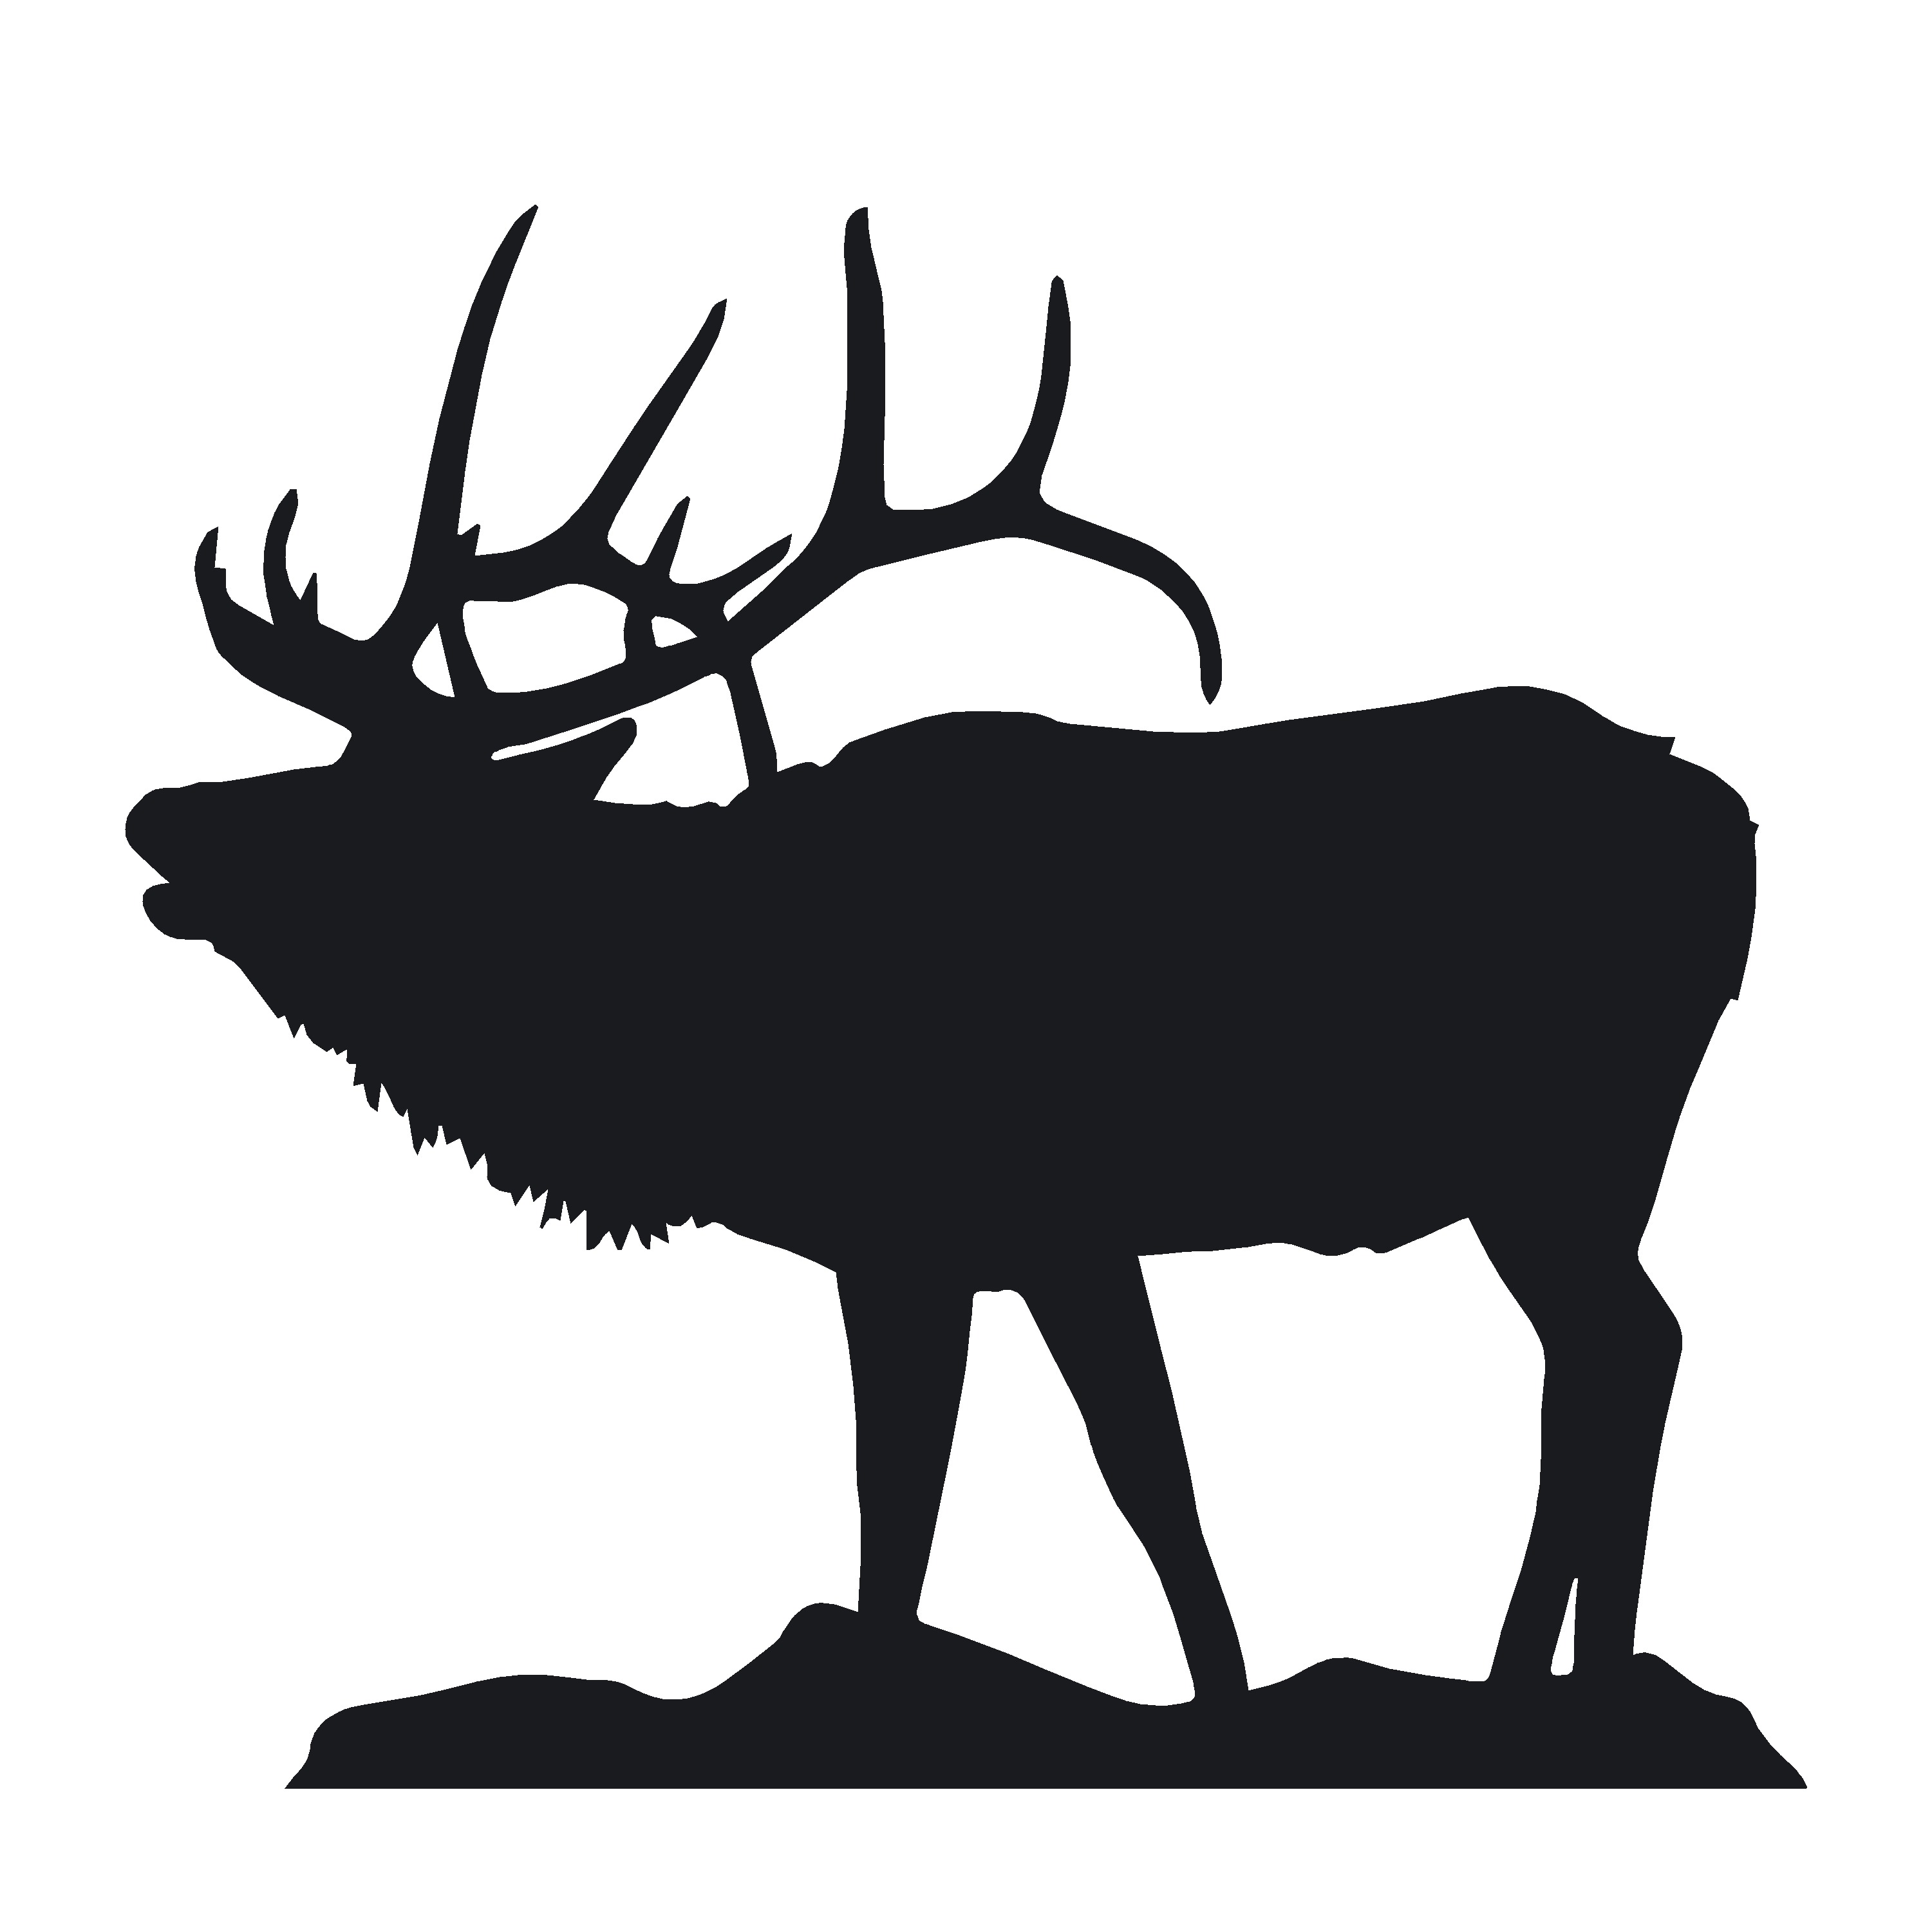 bull elk calling